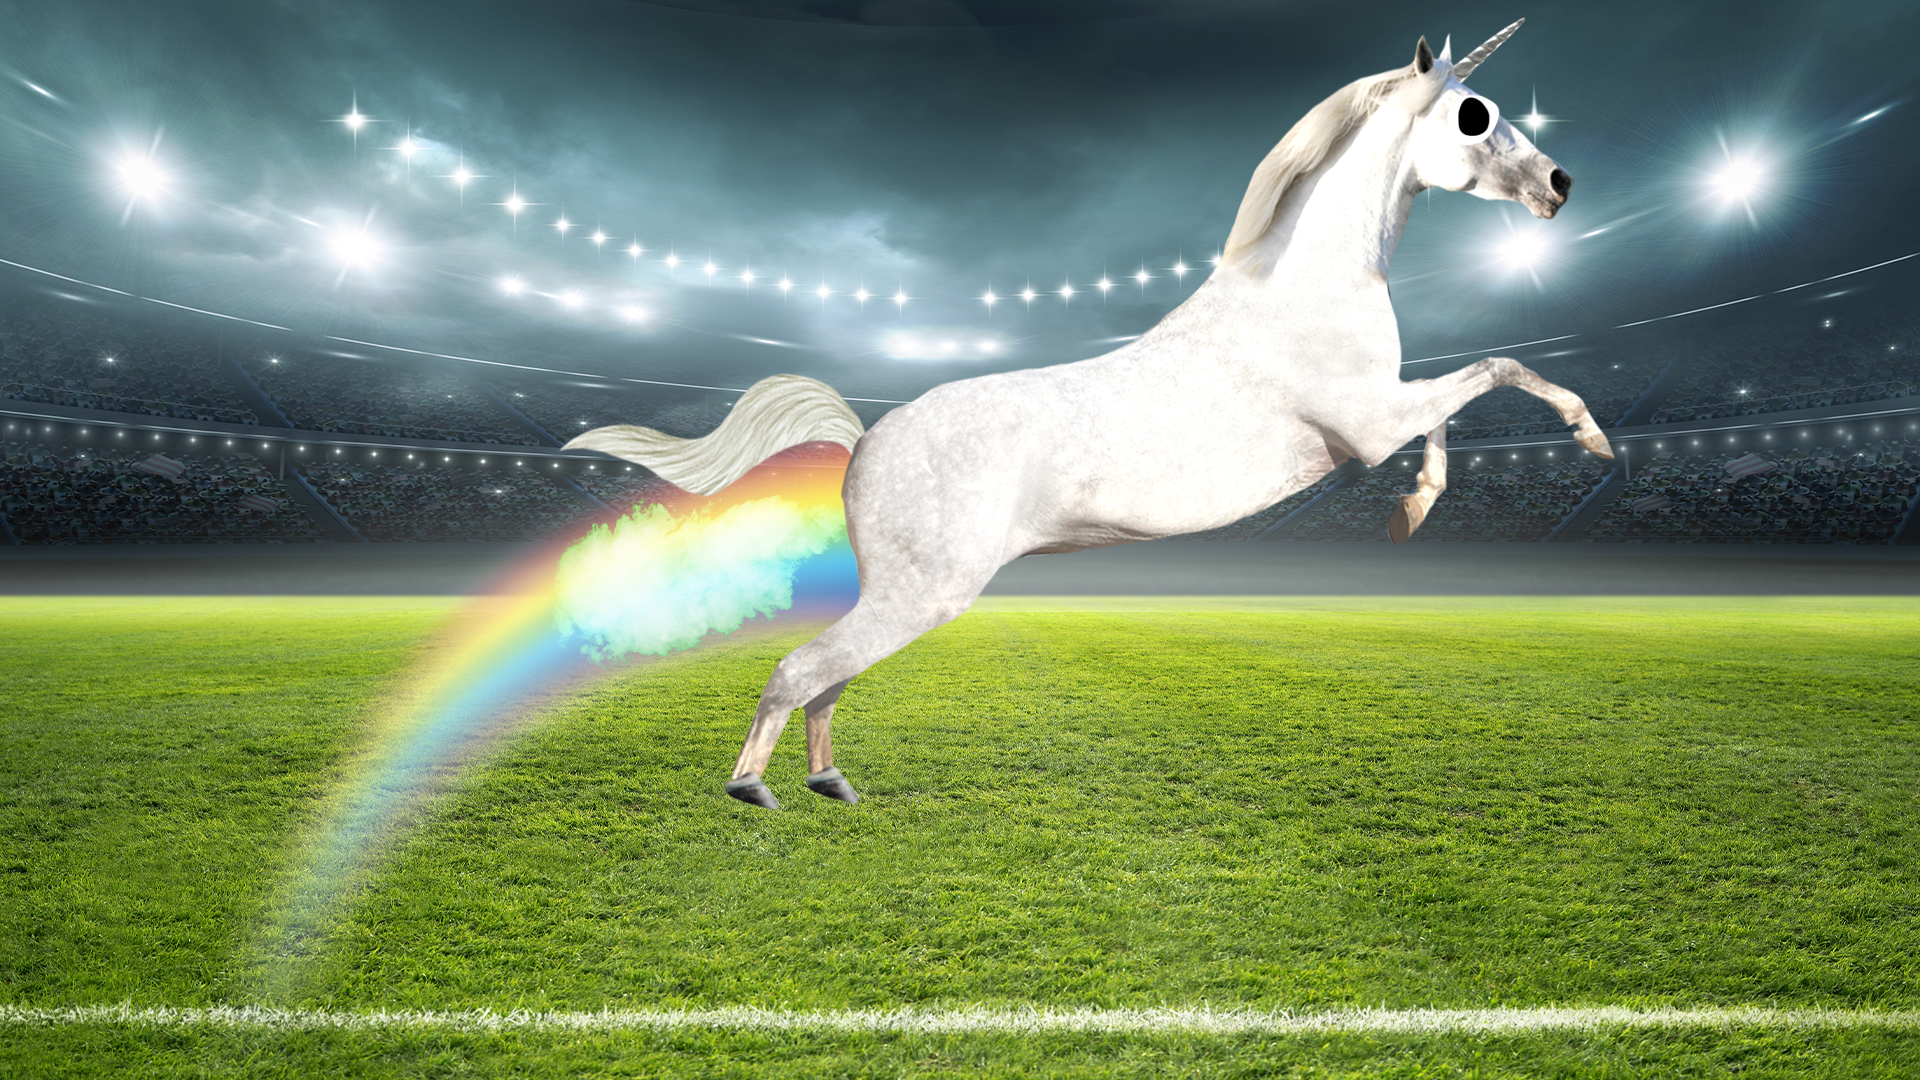 Stadium pitch with flying unicorn 